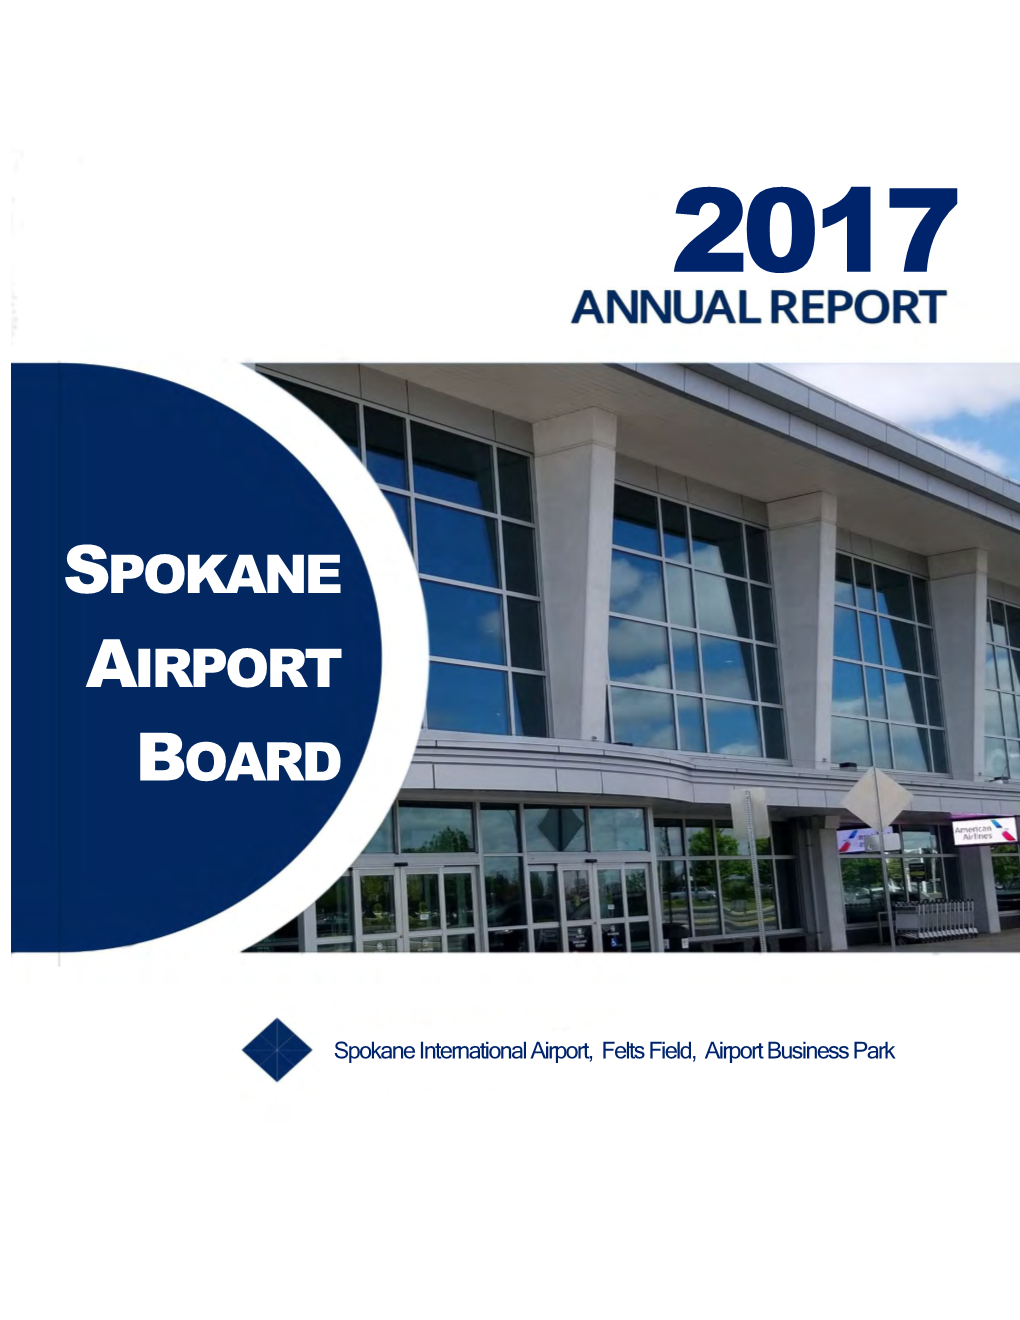 Spokane Airport Board